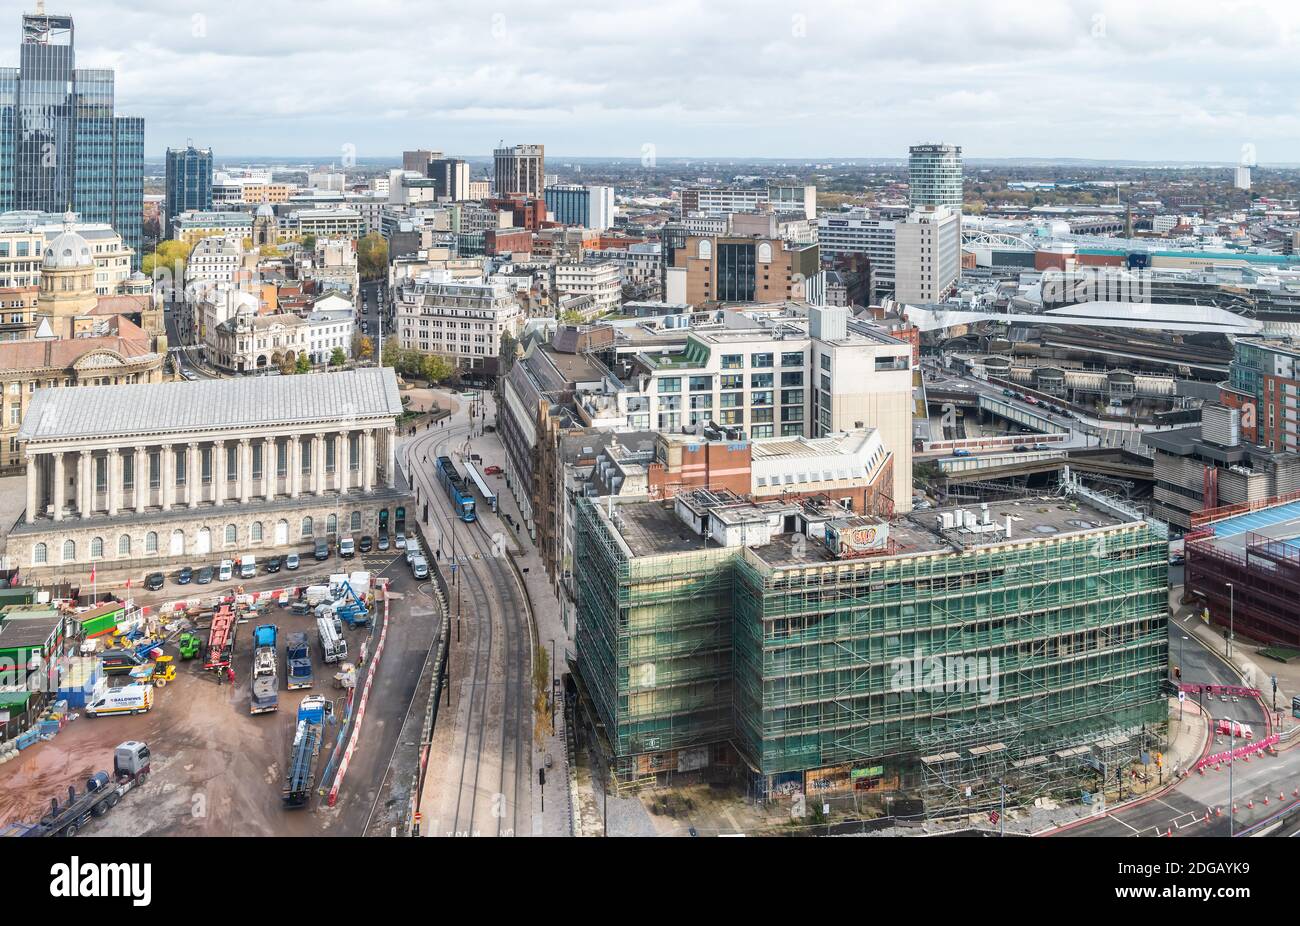 Una vista aérea del centro de la ciudad de Birmingham con vistas al desarrollo del Paraíso, también visible es el Ayuntamiento y Rotunda. Foto de stock